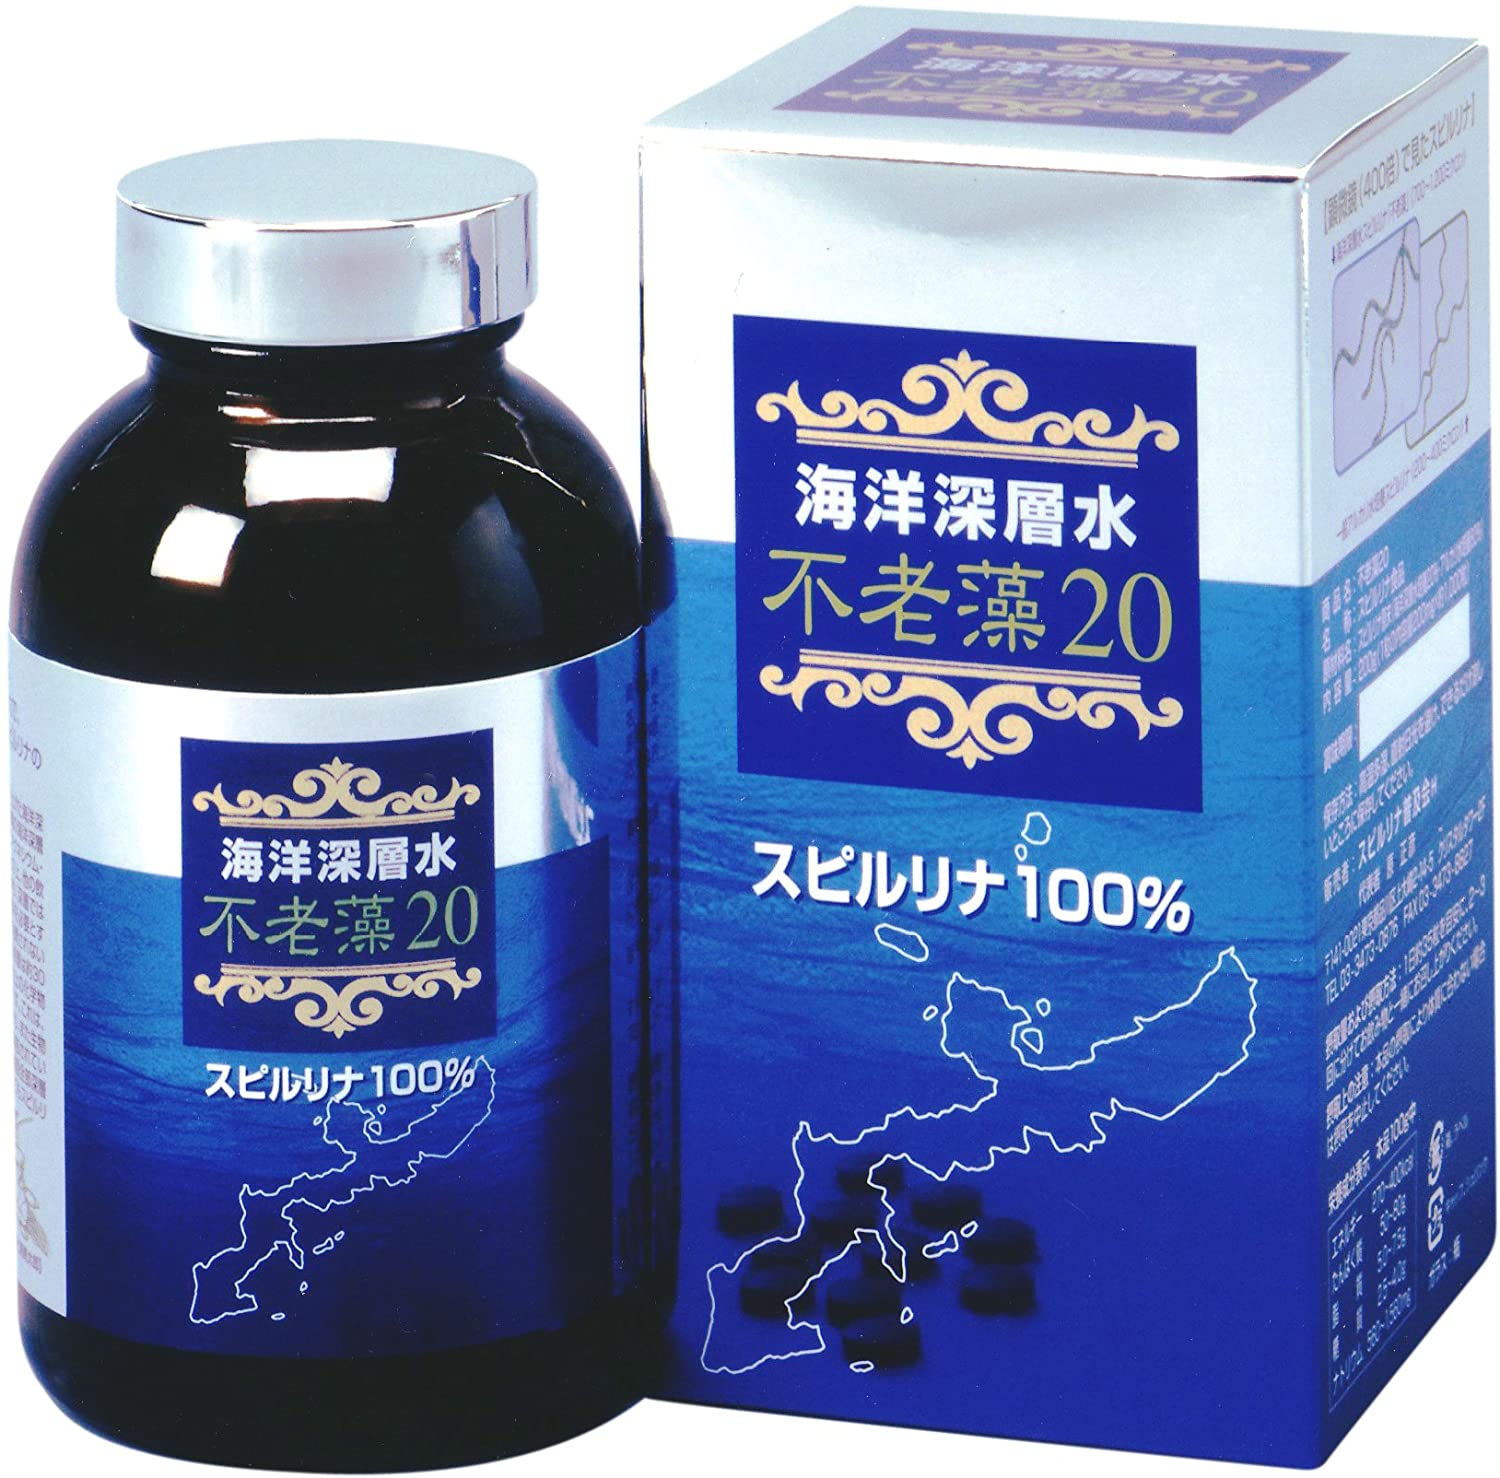 Японские препараты купить. Спирулина японский препарат. Спирулина в таблетках японский препарат. Японская спирулина algae. Препараты из водорослей японские.